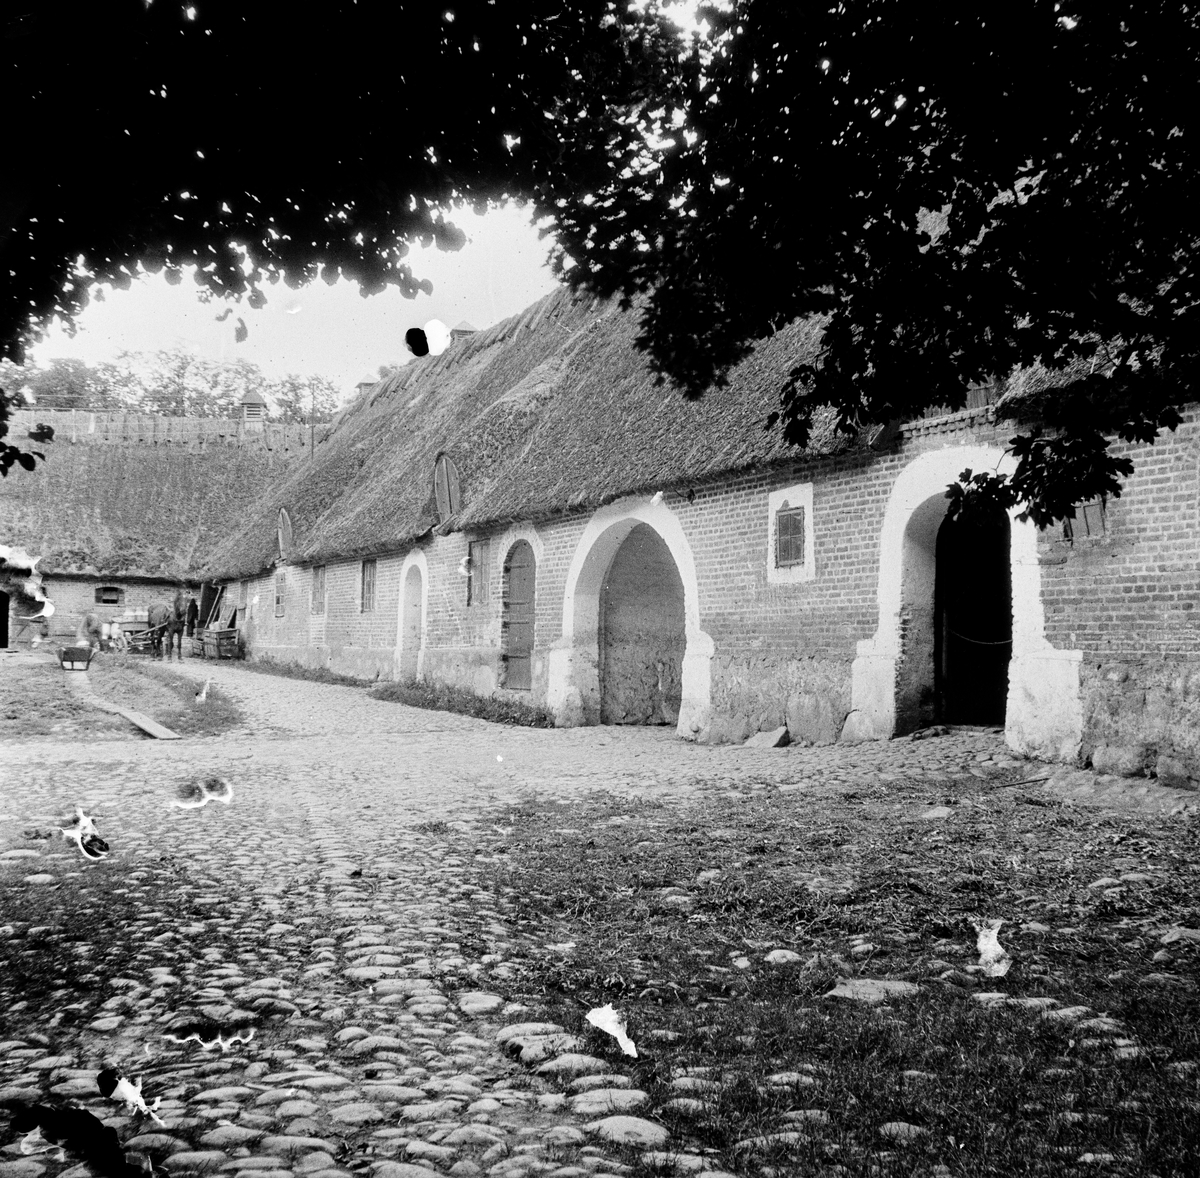 Borreby, Skåne
Exteriör

Svensk arkitektur: kyrkor, herrgårdar med mera fotograferade av Arkitekturminnesföreningen 1908-23.